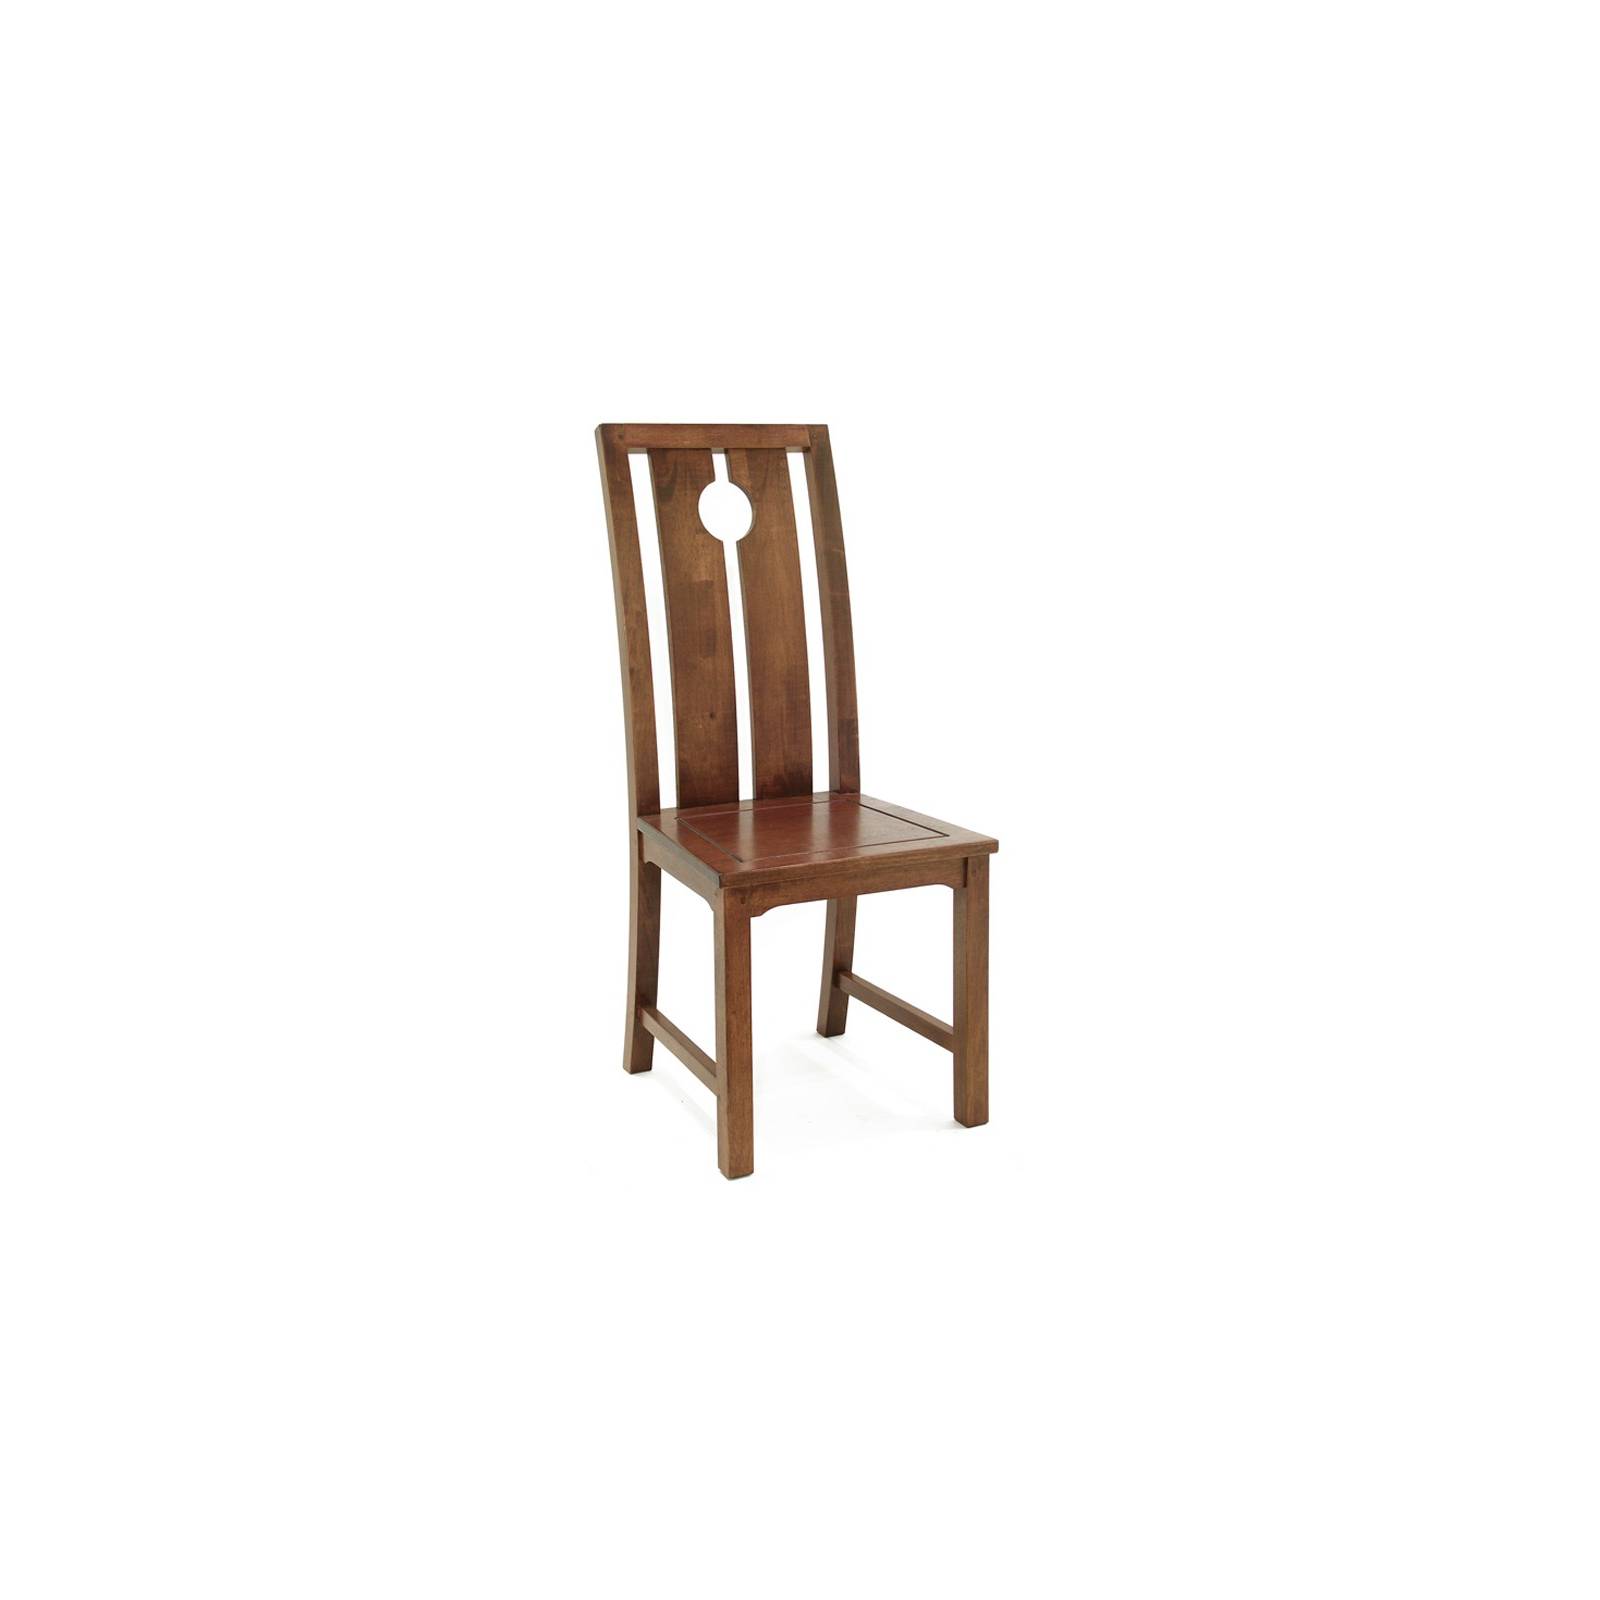 Chaise Chine Hévéa - meuble bois exotique